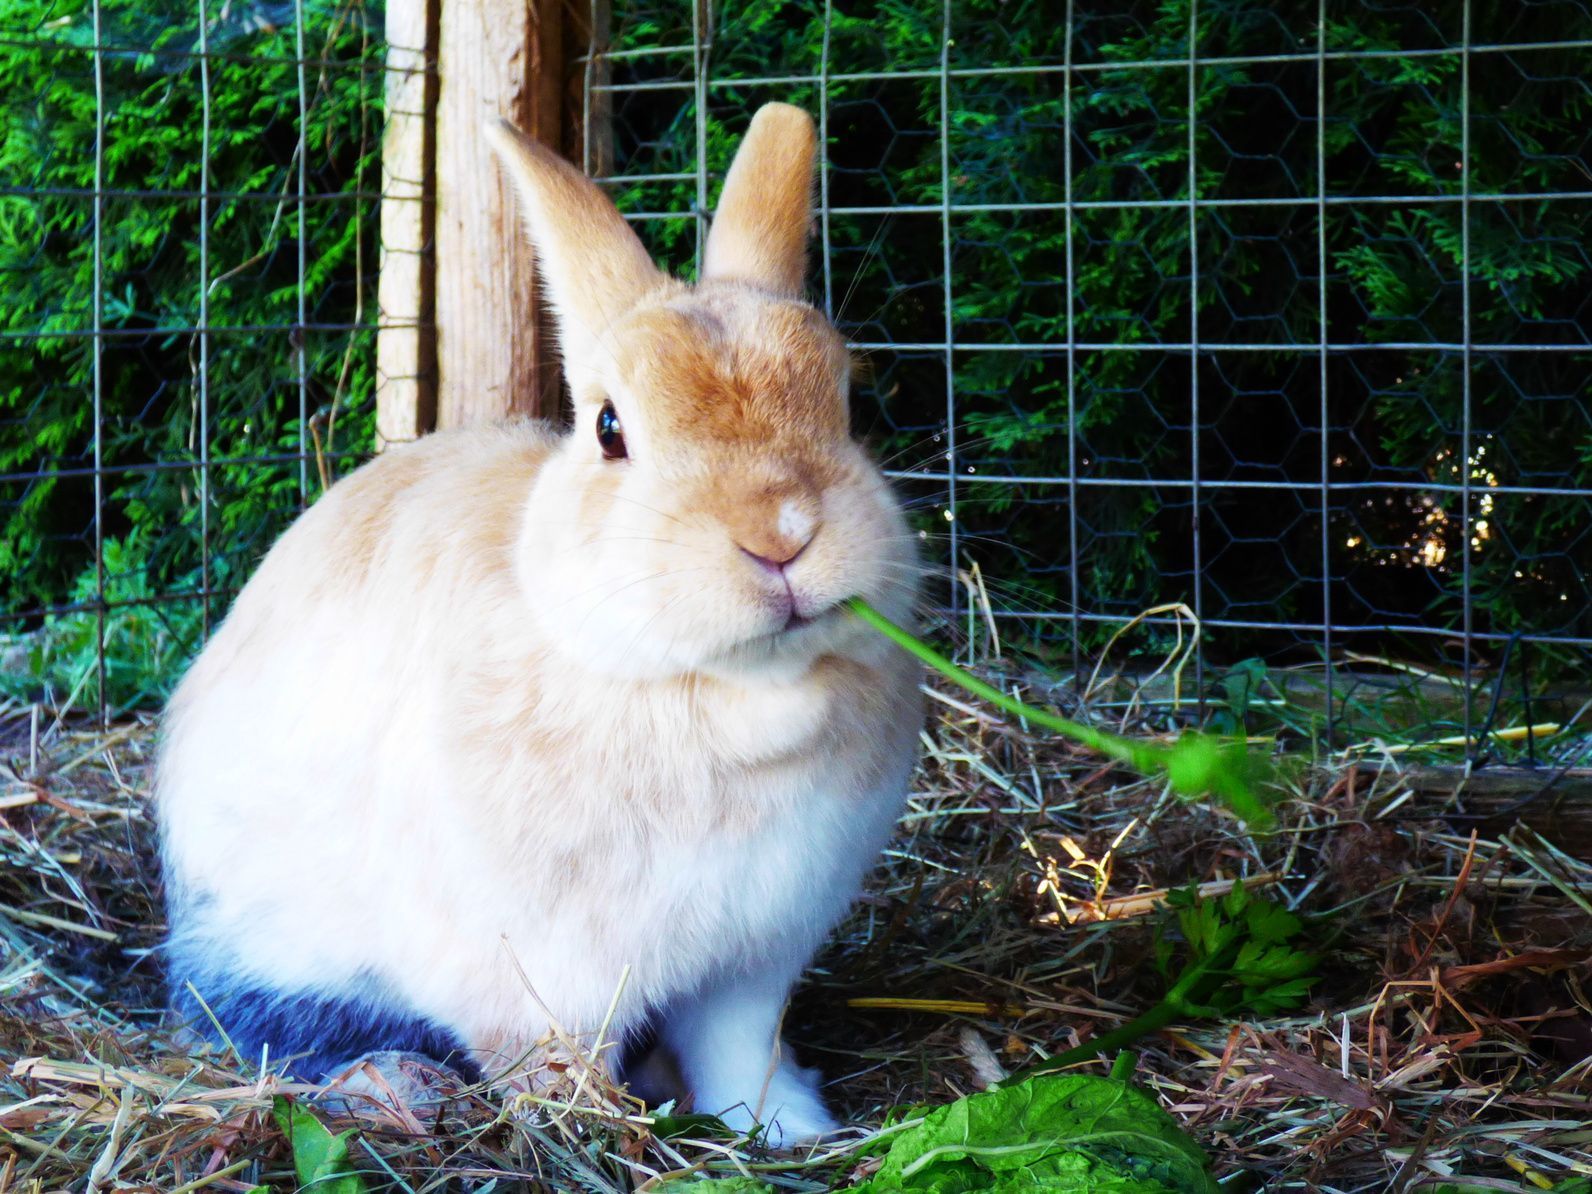 Um den Kaninchenstall winterfest zu machen, sollten Sie an eine dicke Schicht Stroh denken – so bleibt es warm genug für Ihren Hoppler.